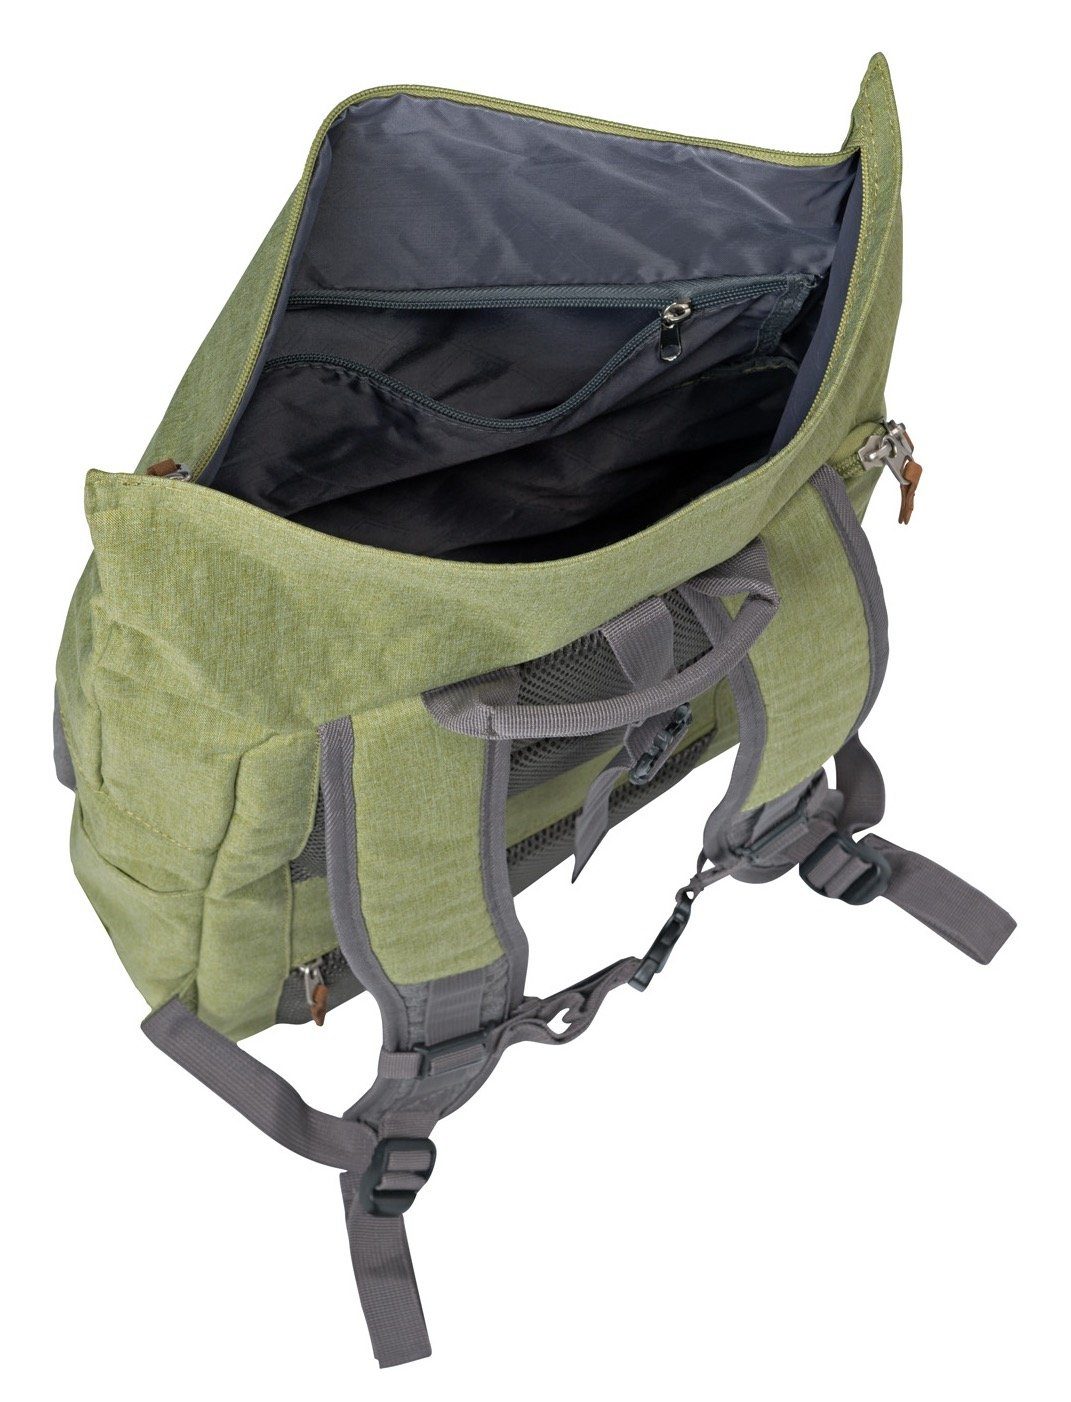 travelite Daypack BASICS viel grün/grau Rollup Rucksack, mit Stauraum